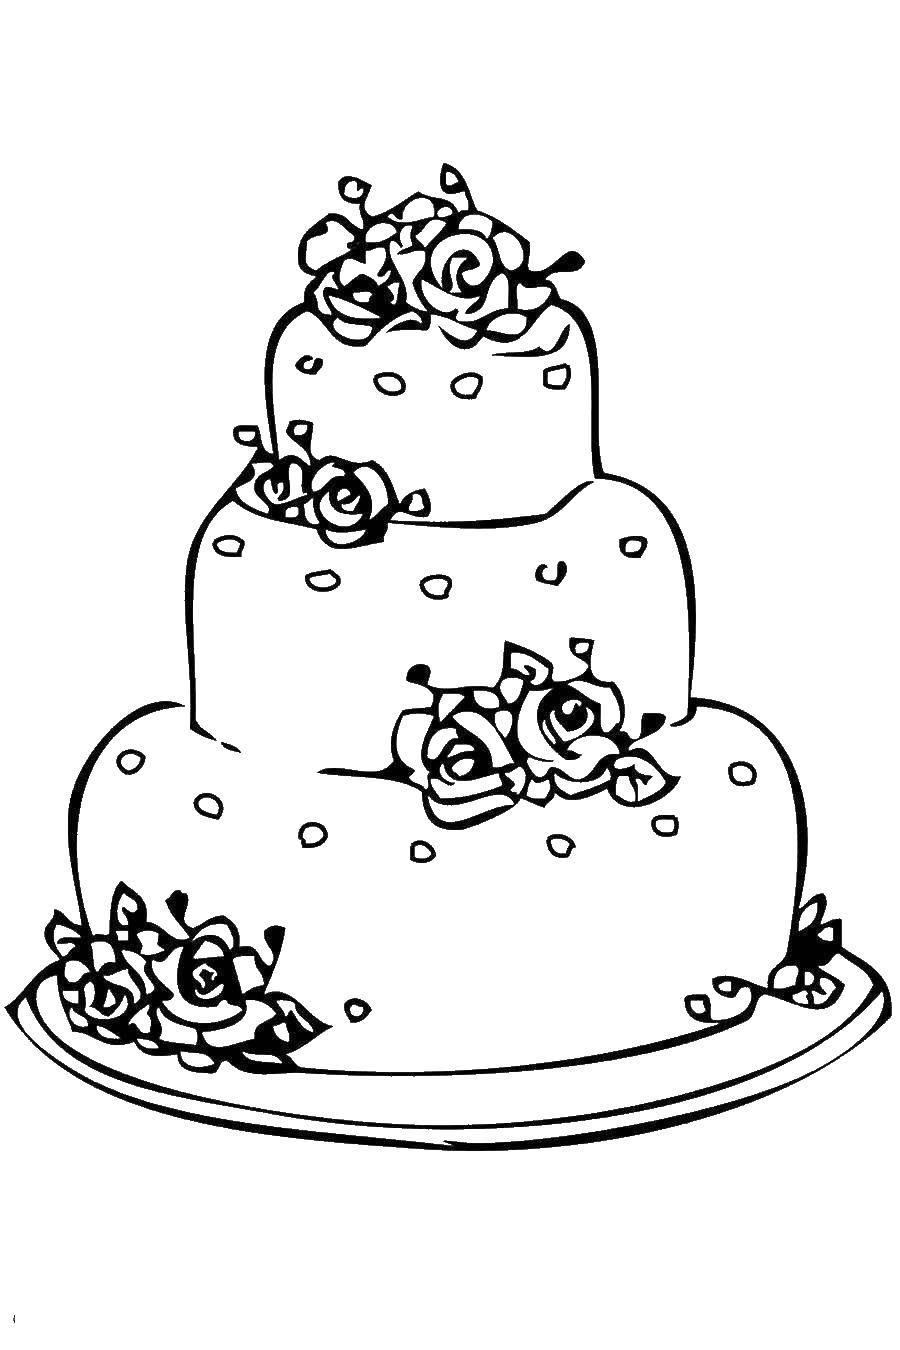 Раскраска с тортом, тарелкой и цветами (торты, цветы)